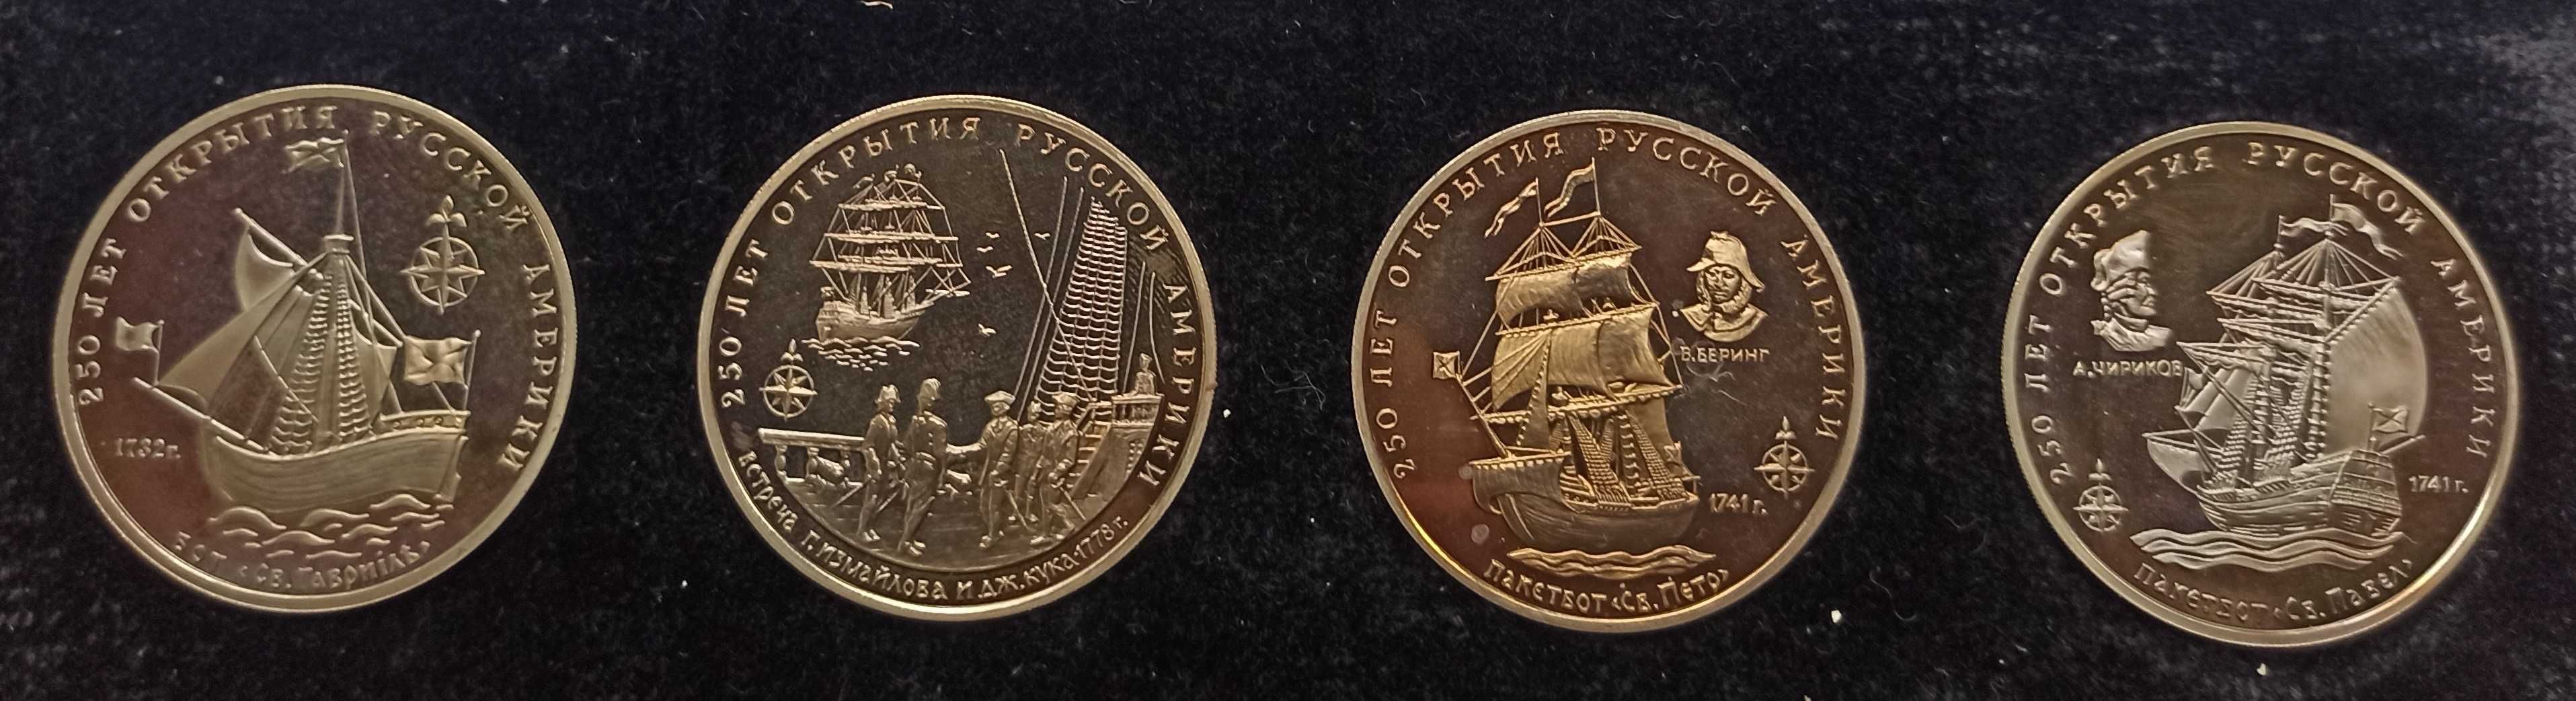 Medal Medale - komplet 4 medali 250 lat drogi morskiej Rosja - USA